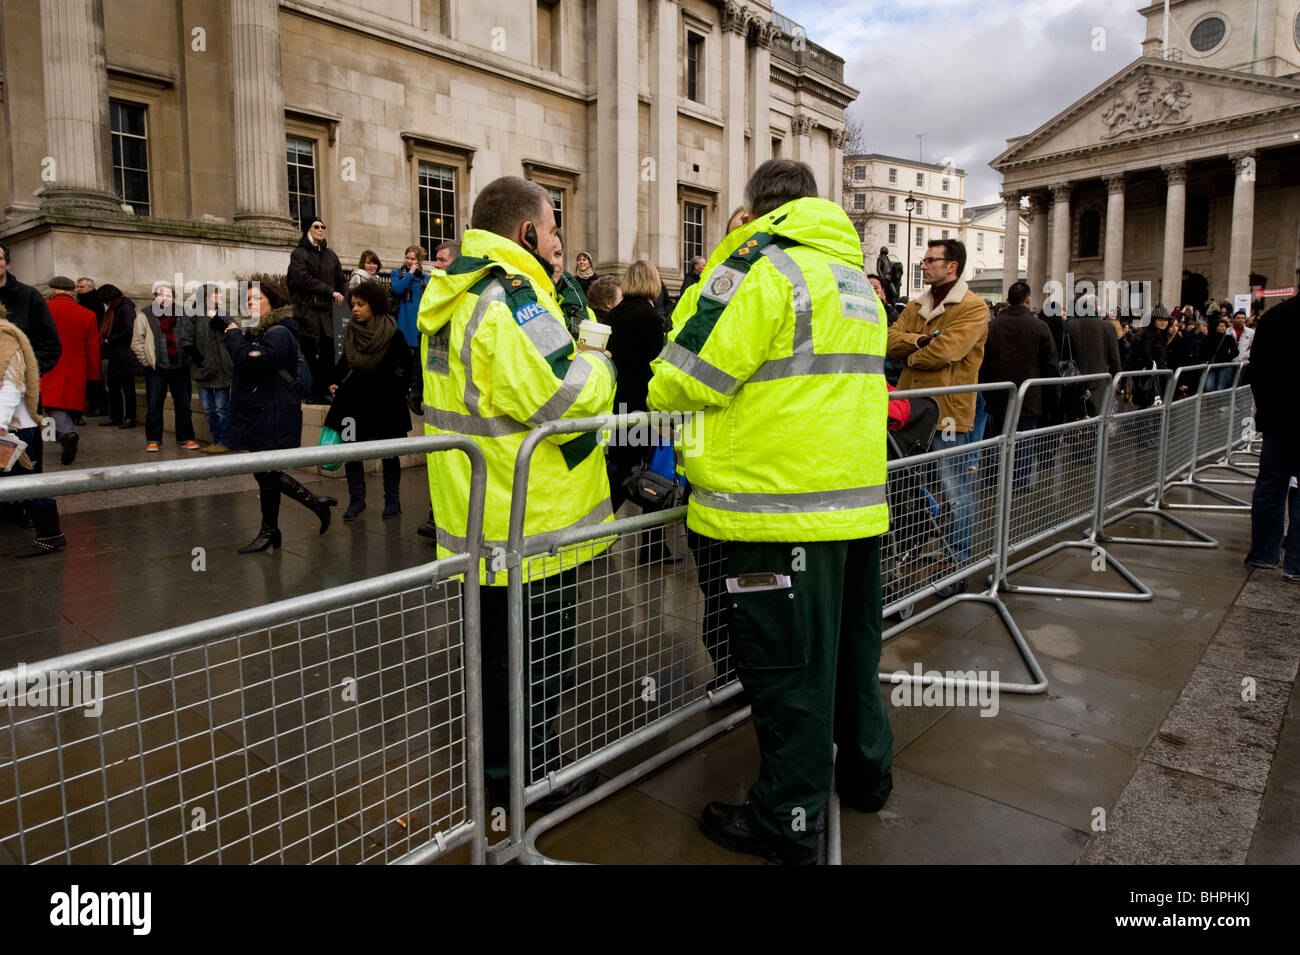 Deux hommes d'ambulanciers paramédicaux dans fluorescent yellow jackets lors des célébrations du Nouvel An chinois à Trafalgar Square London UK Banque D'Images